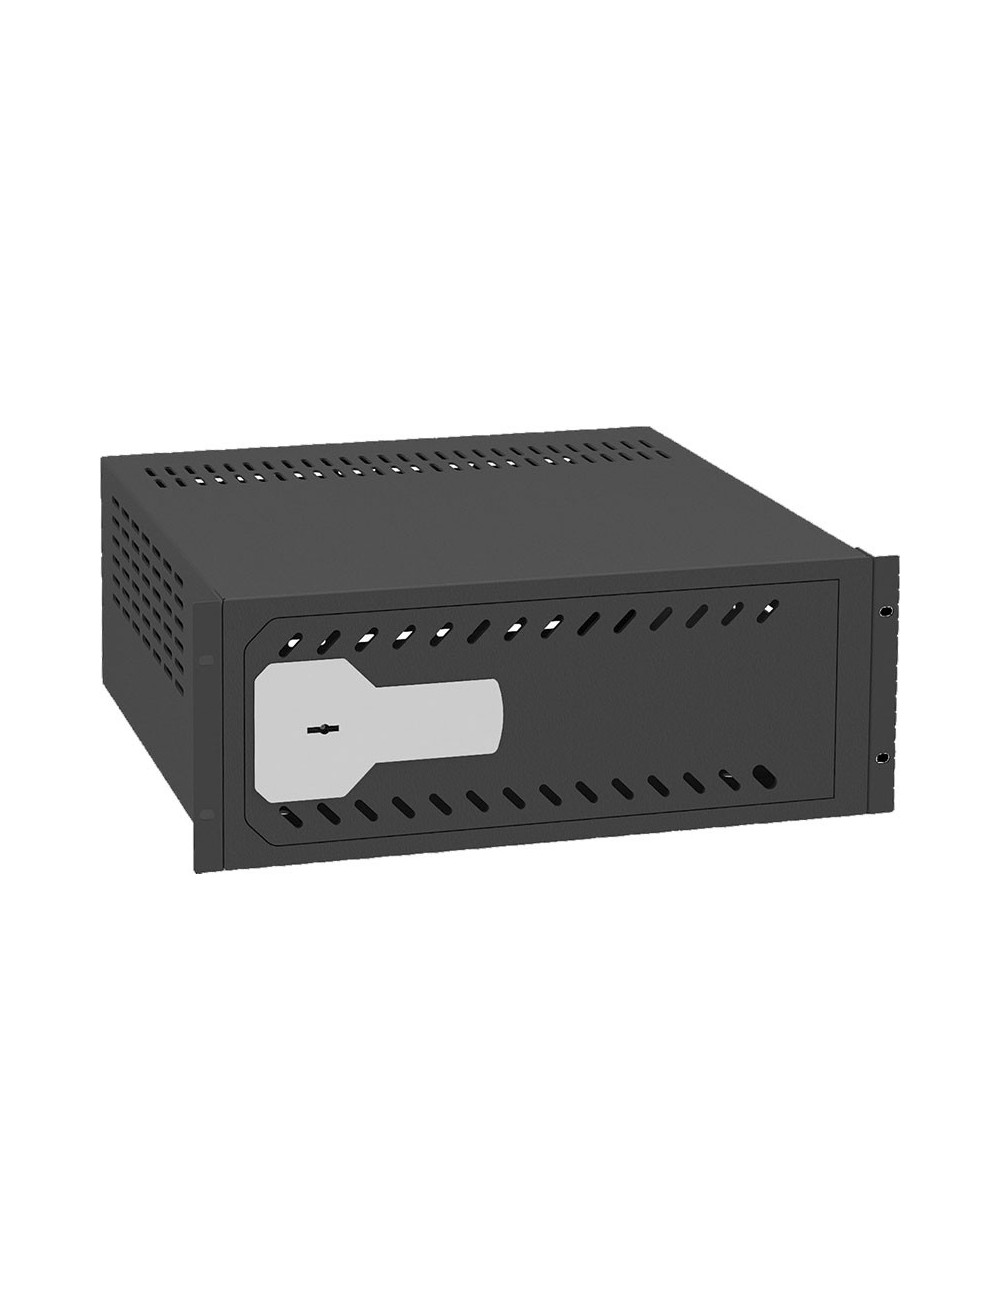 1U rack DVR safe - Rack 19" - Specification for CCTV - mechanical security lock